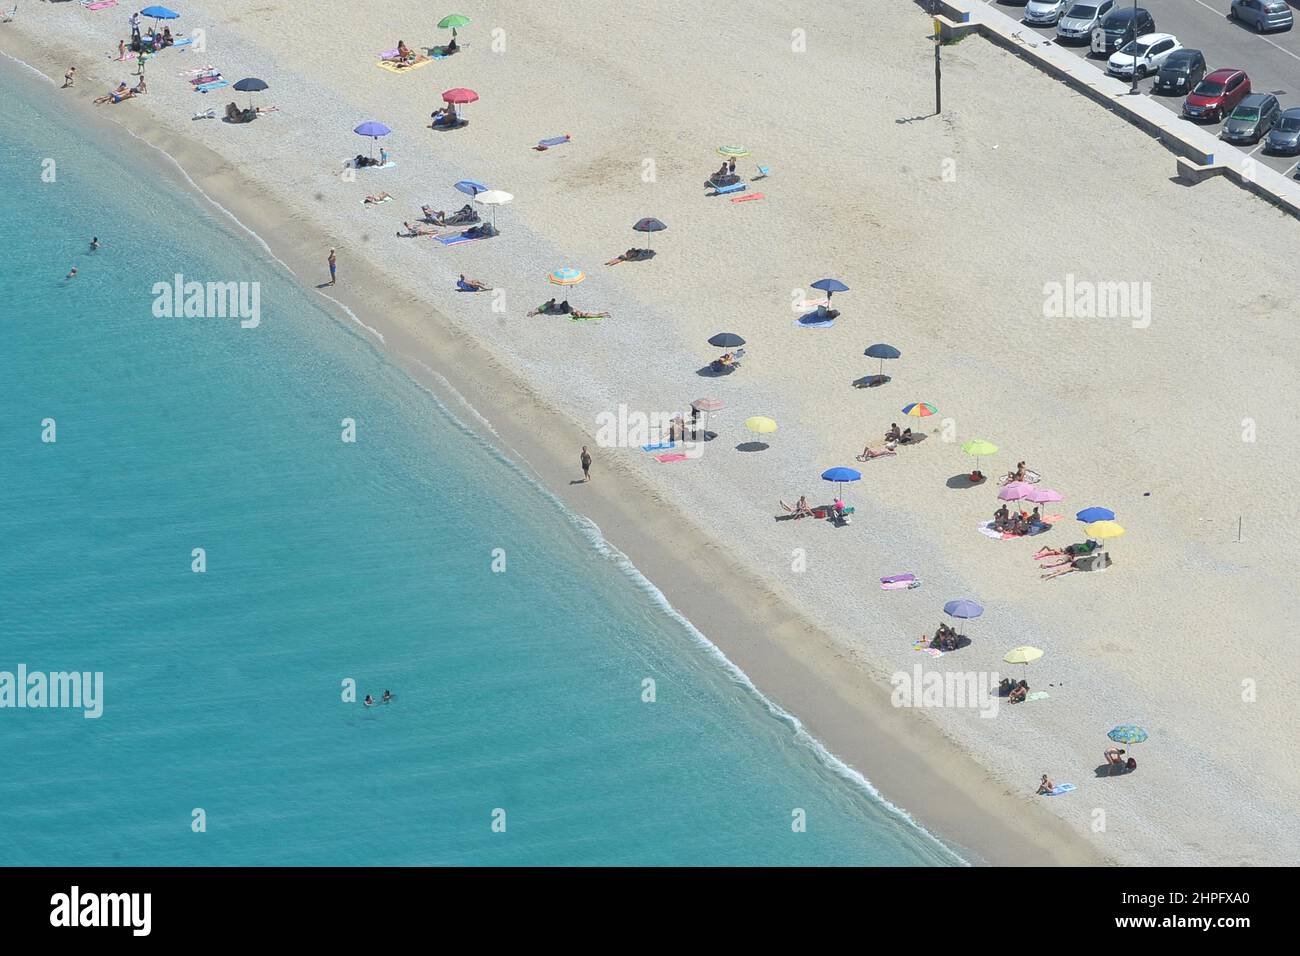 Italie, Calabre, Pizzo Calabro, la plage Banque D'Images